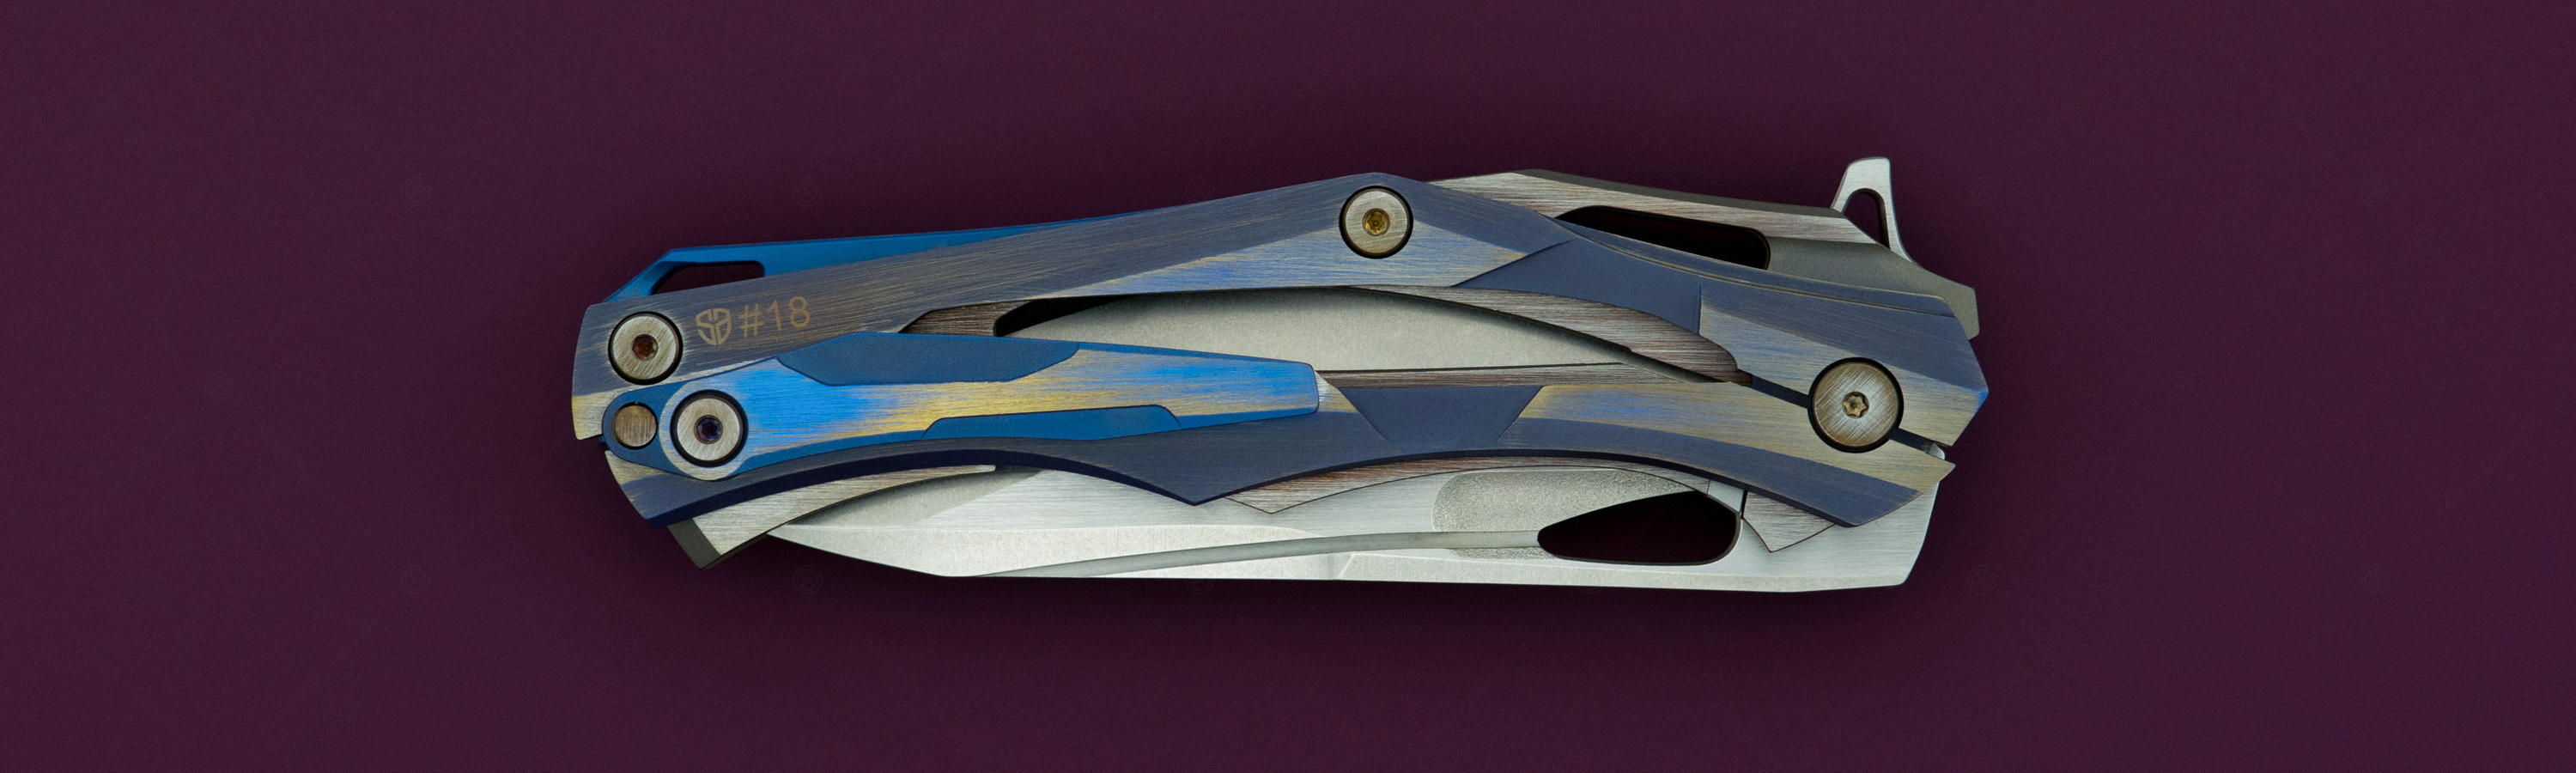 Перфорация рукояти ножа Decepticon-1 Blue